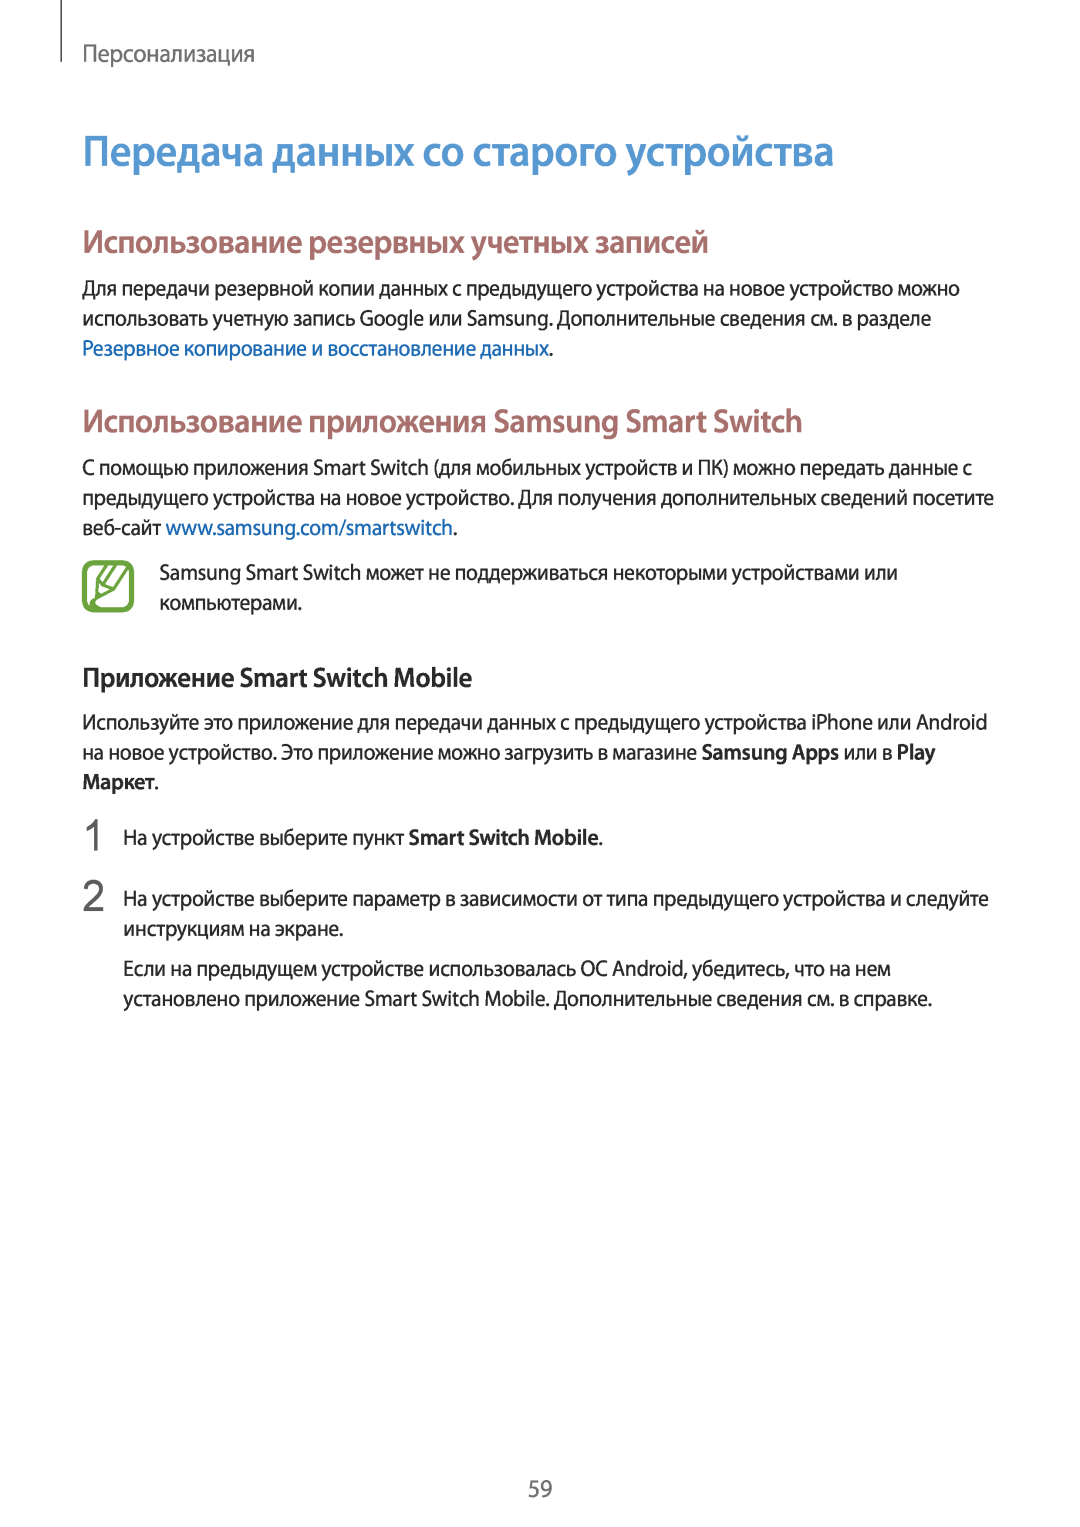 Samsung SM-T800NZWASER Передача данных со старого устройства, Использование резервных учетных записей, Персонализация 